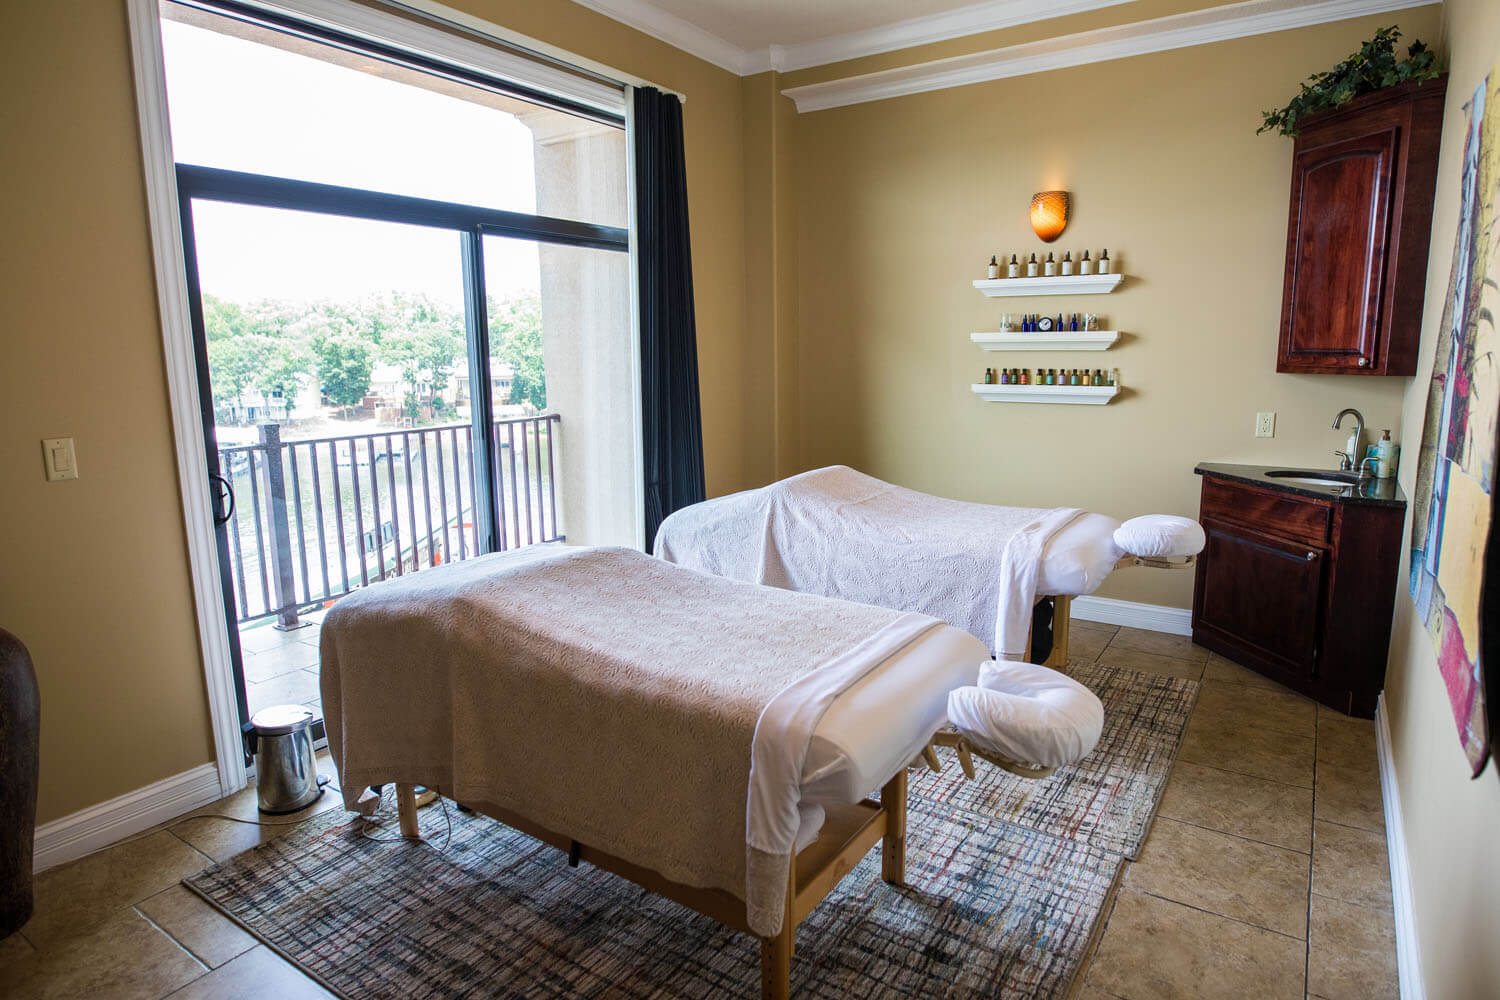 A massage room at Spa 54, the Spa at Camden on the Lake Resort at Lake of the Ozarks